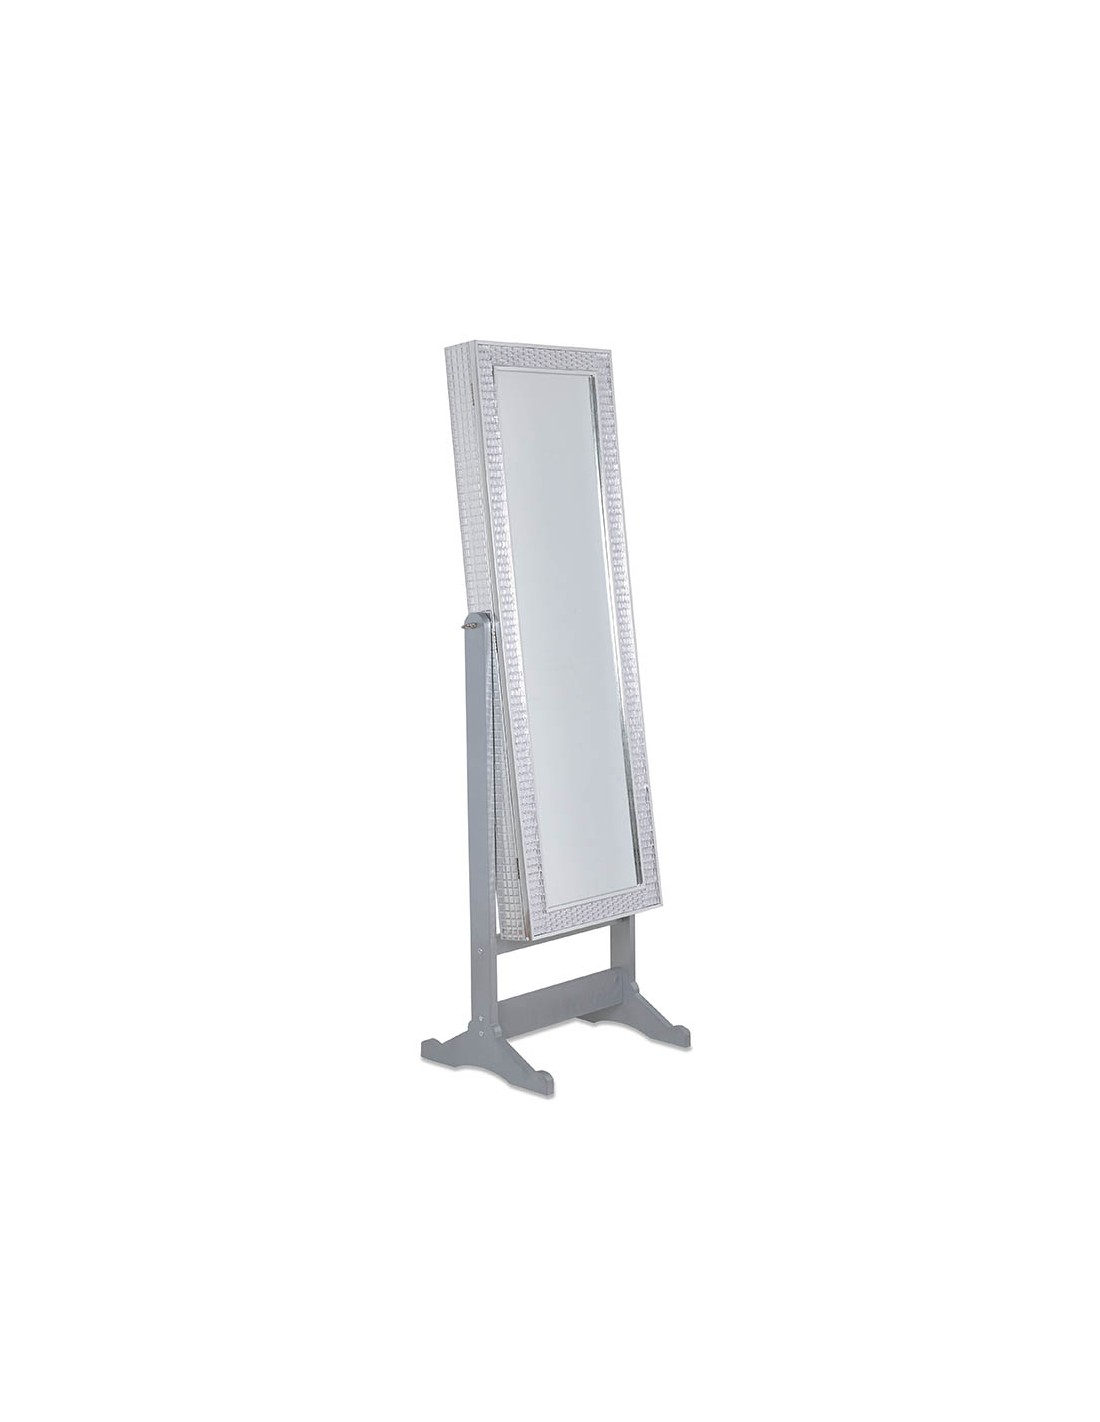 Espejo Joyero Blanco 35x153 cm